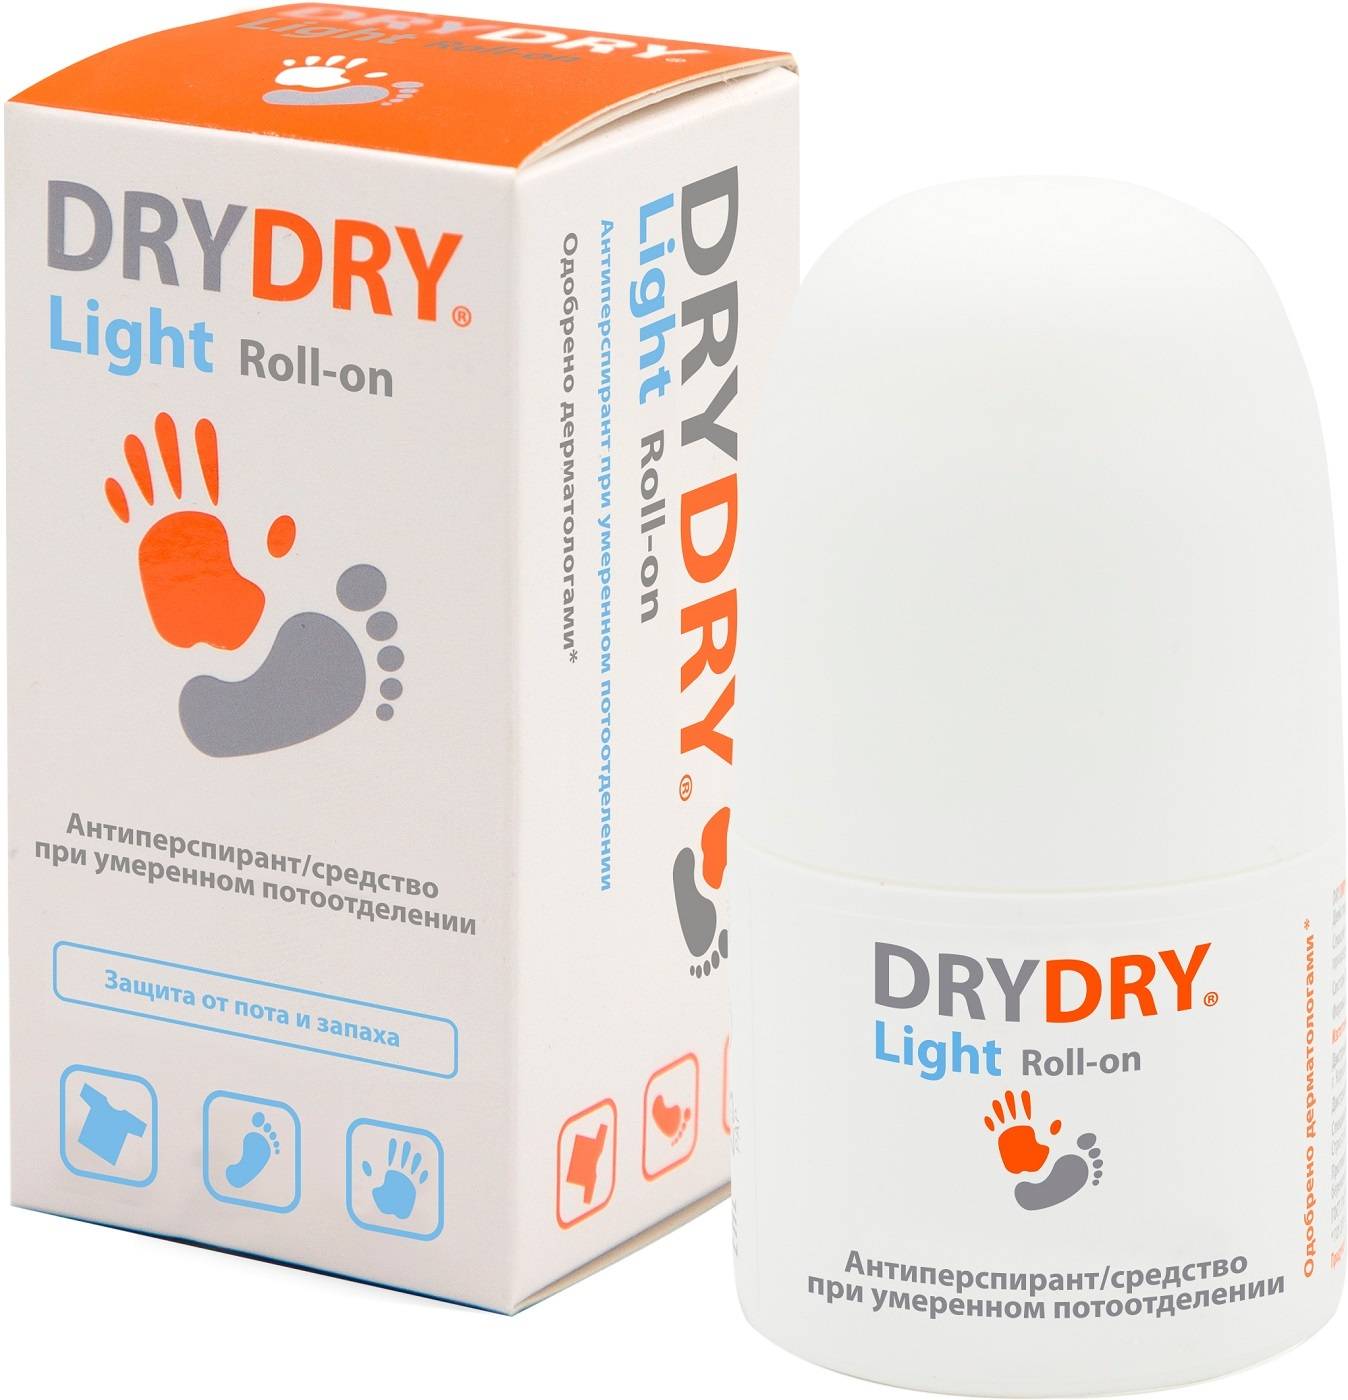 Дезодоранты драй драй (dry dry): отзывы врачей, инструкция и виды